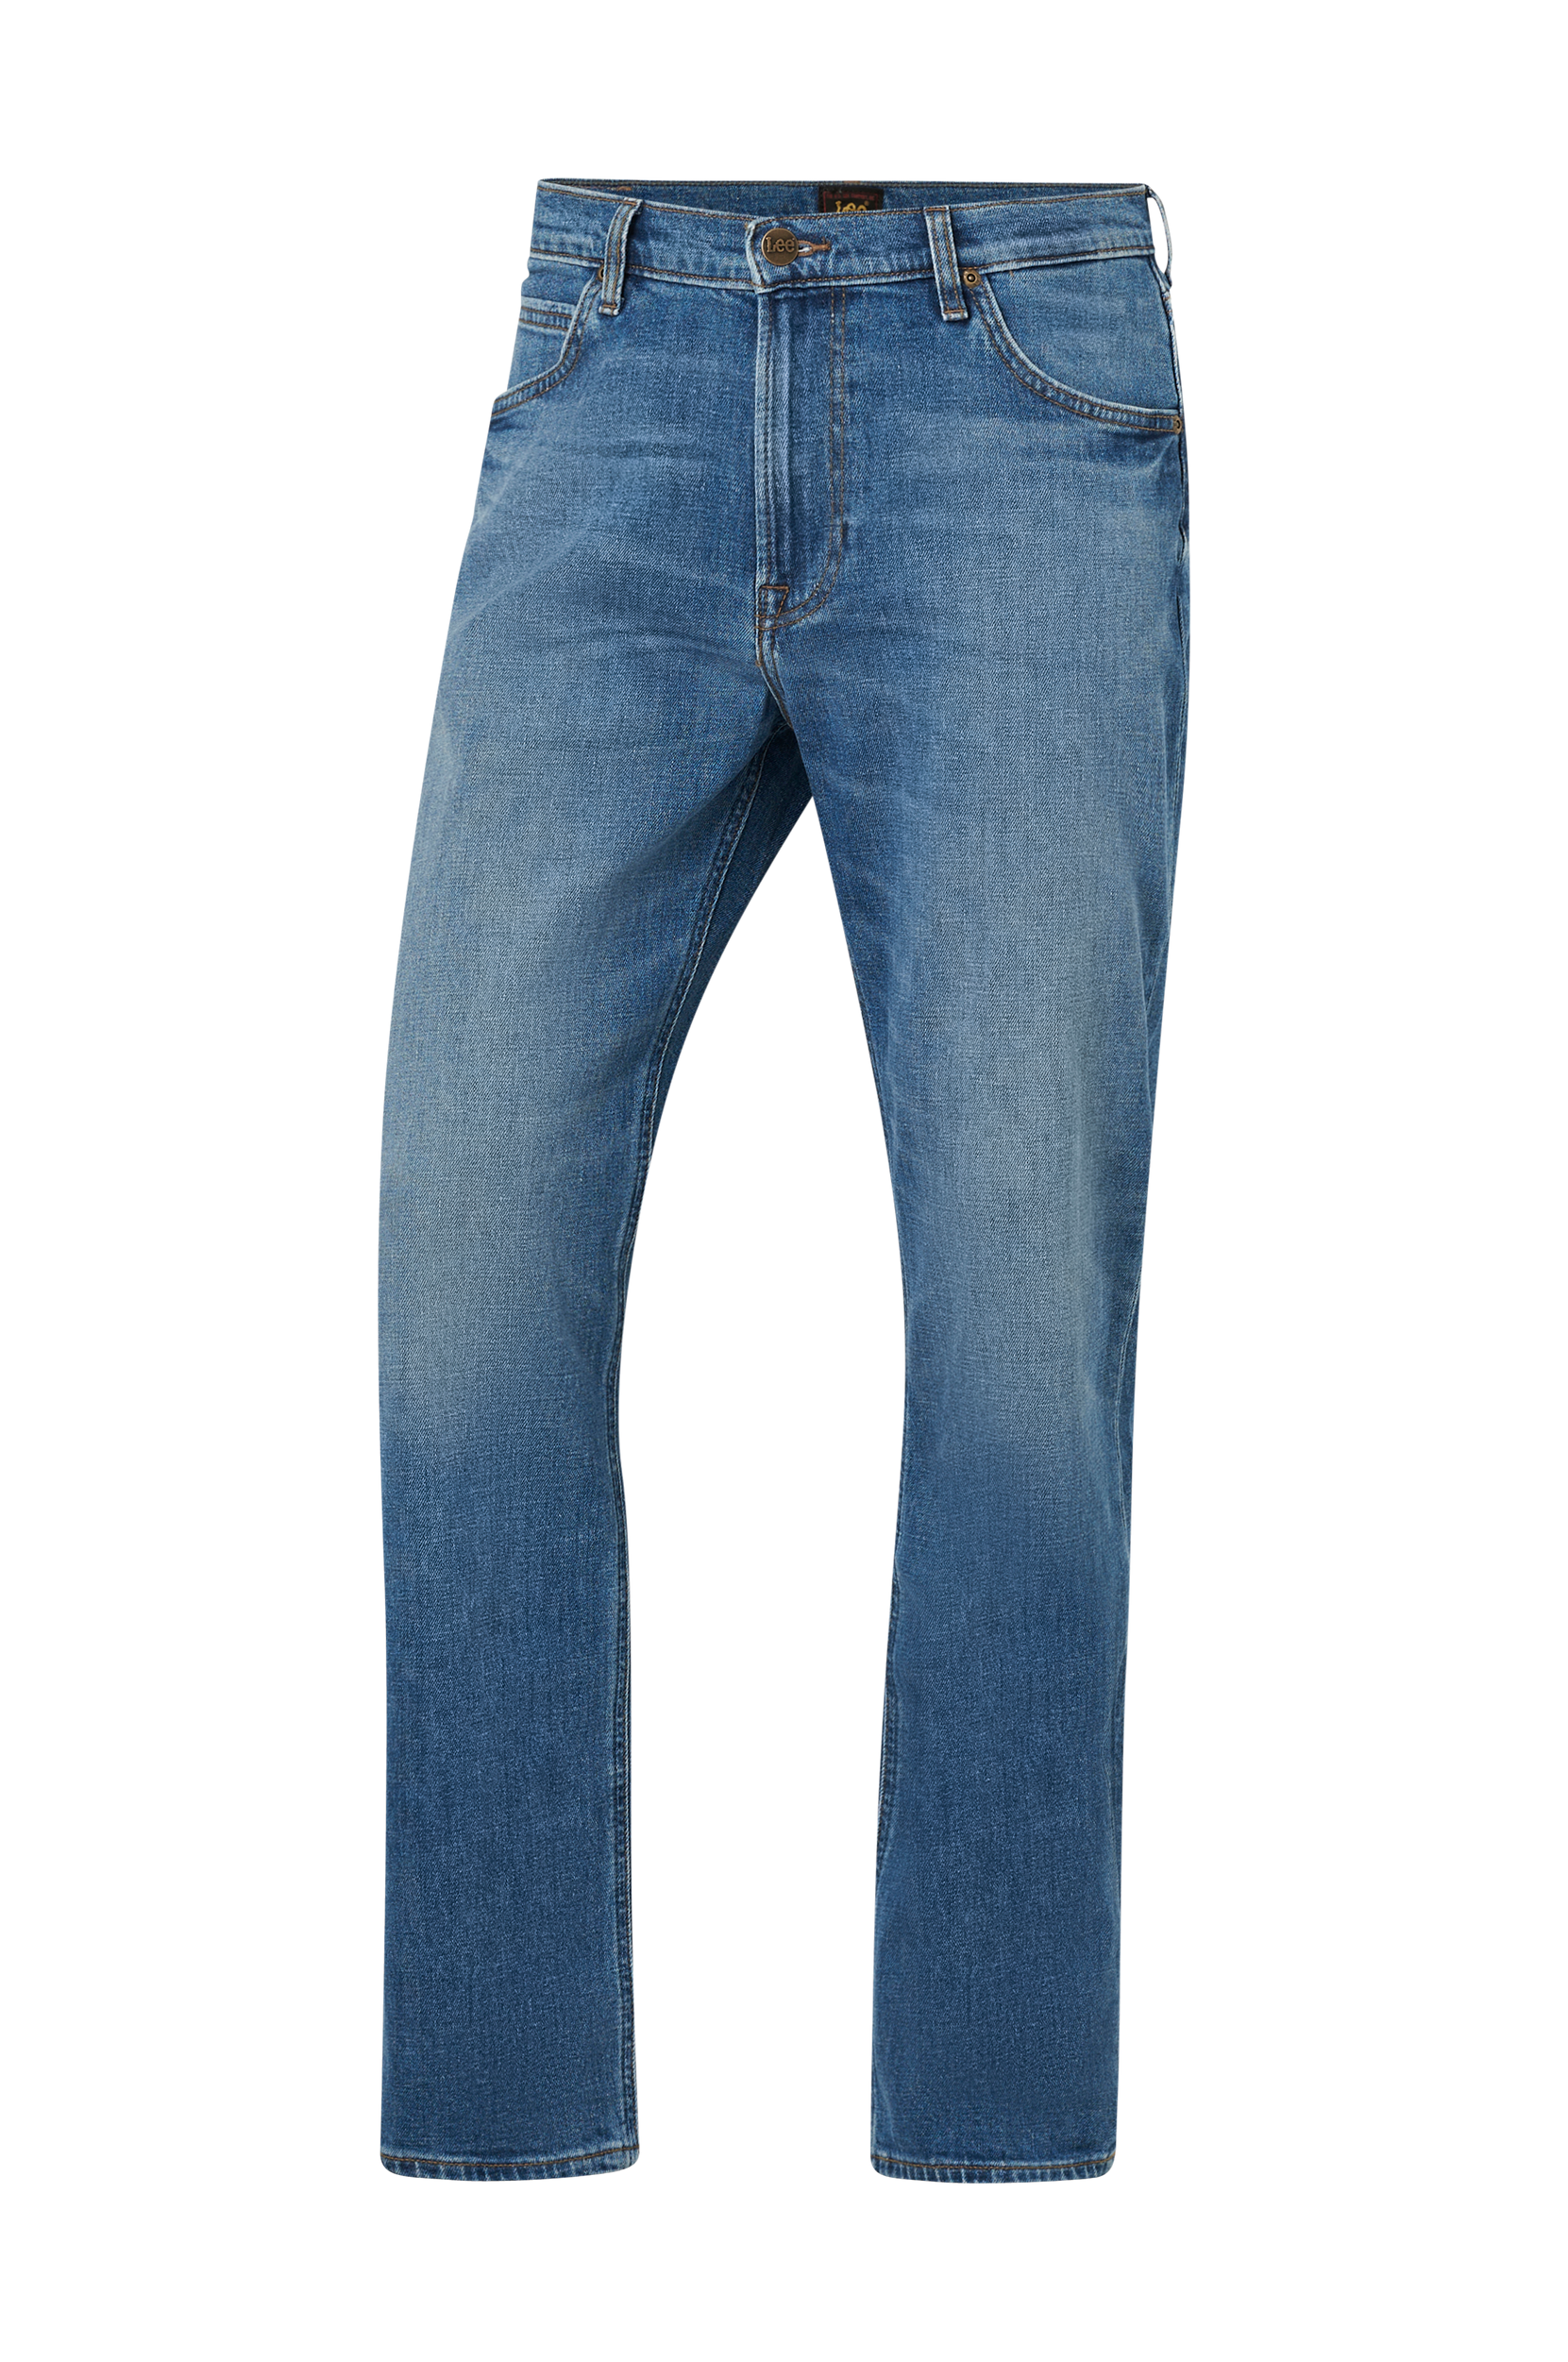 jord medlem Middelhavet Lee - Jeans West Relaxed - Blå - W31/L30 - Jeans - Tøj til mænd (31106357)